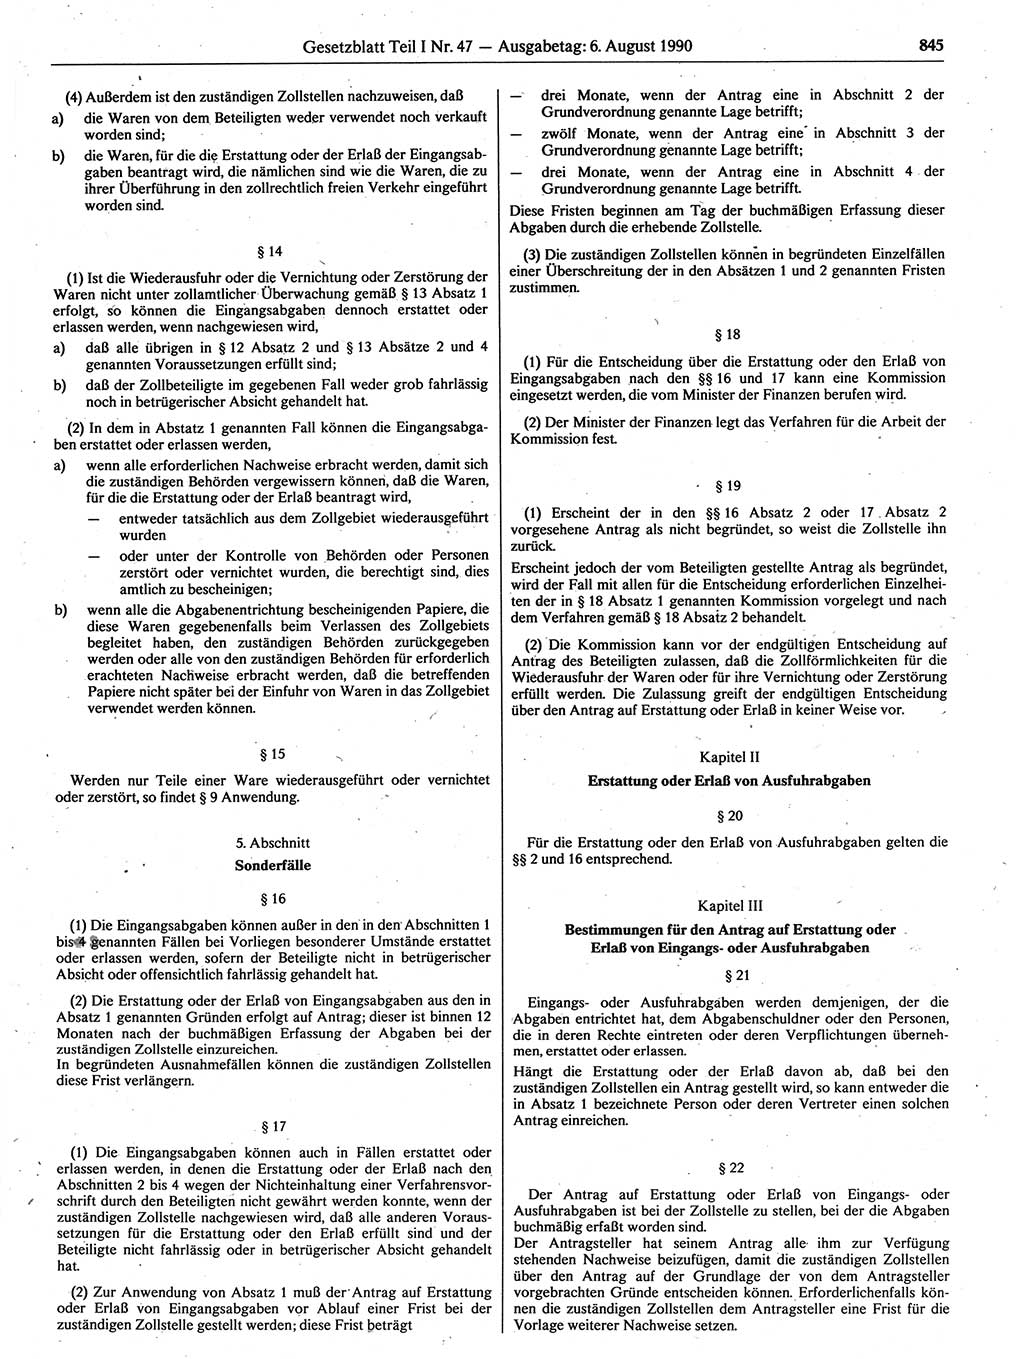 Gesetzblatt (GBl.) der Deutschen Demokratischen Republik (DDR) Teil Ⅰ 1990, Seite 845 (GBl. DDR Ⅰ 1990, S. 845)